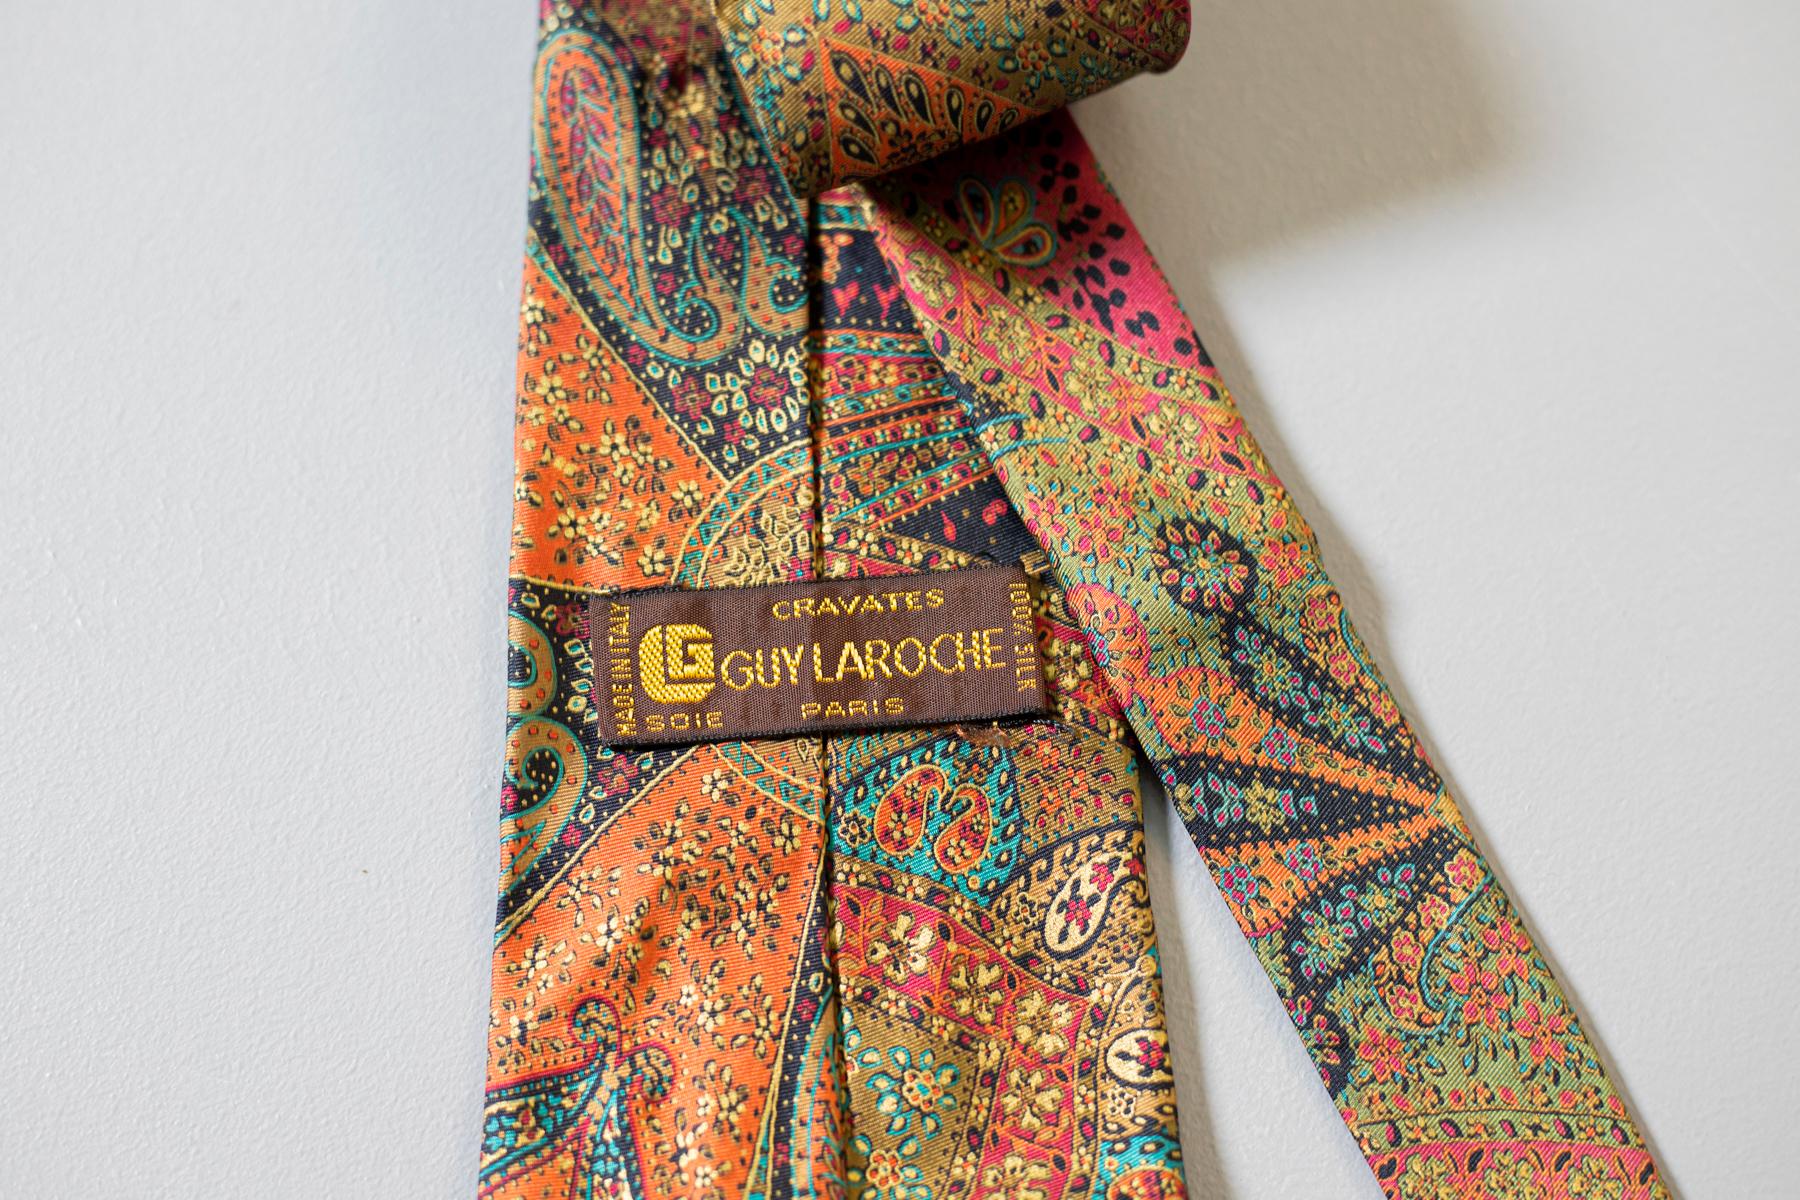 Multicolore, voyante et créative : cette cravate tout en soie conçue par Guv Laroche et fabriquée en Italie est un excellent accessoire. Décorée d'un motif paisley en orange, rouge, vert, bleu et jaune, cette cravate est parfaite pour tous ceux qui